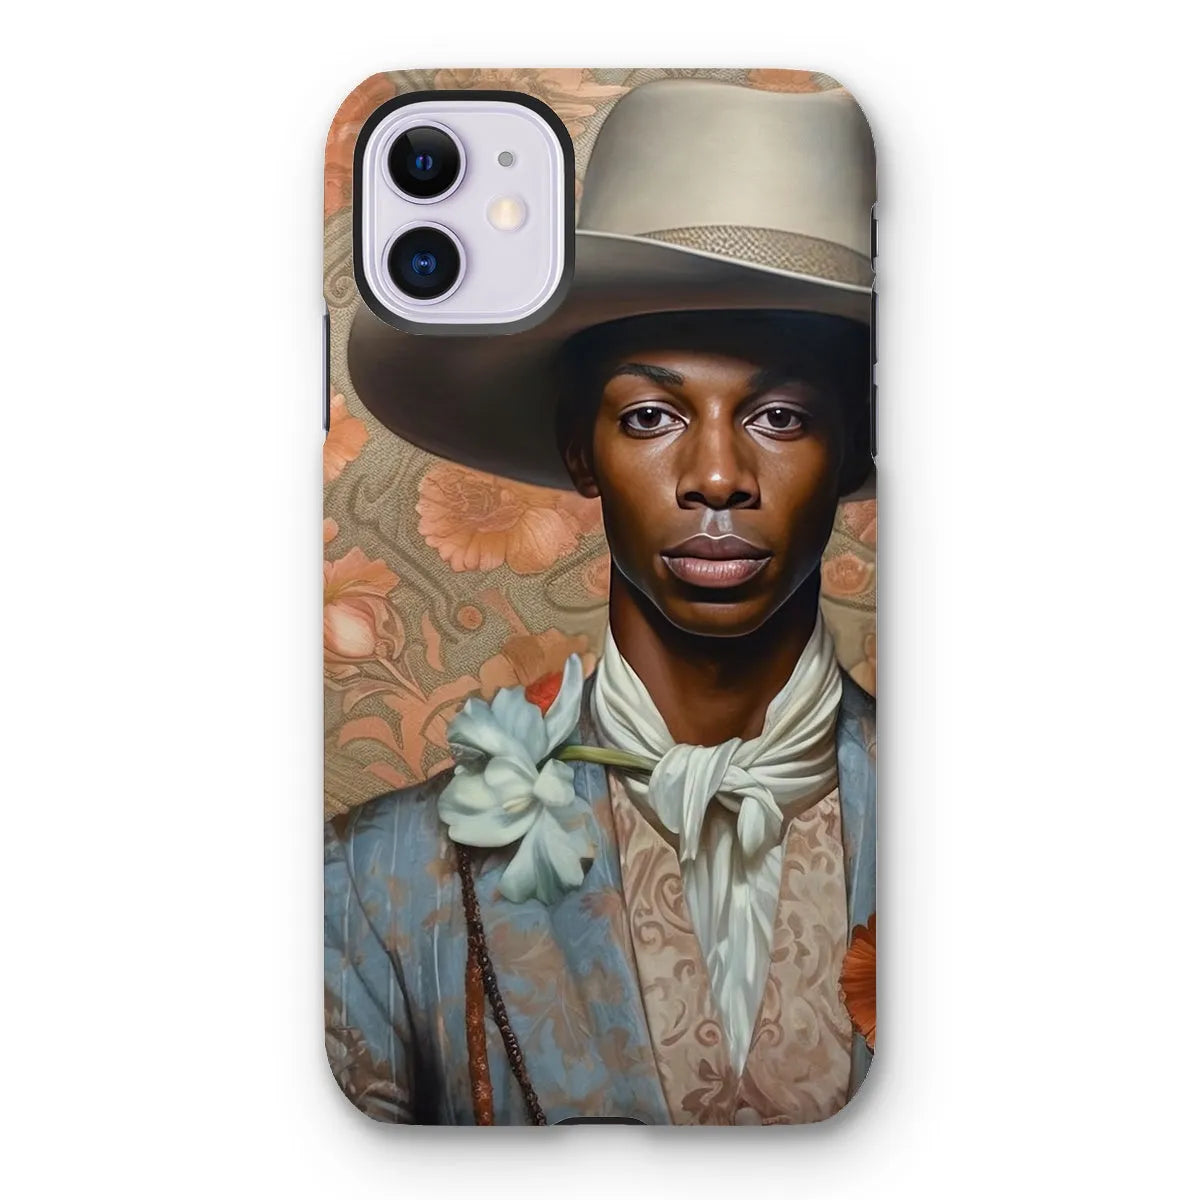 Apollo The Gay Cowboy - Gay Aesthetic Art Phone Case - Iphone 11 / Matte - Mobile Phone Cases - Aesthetic Art